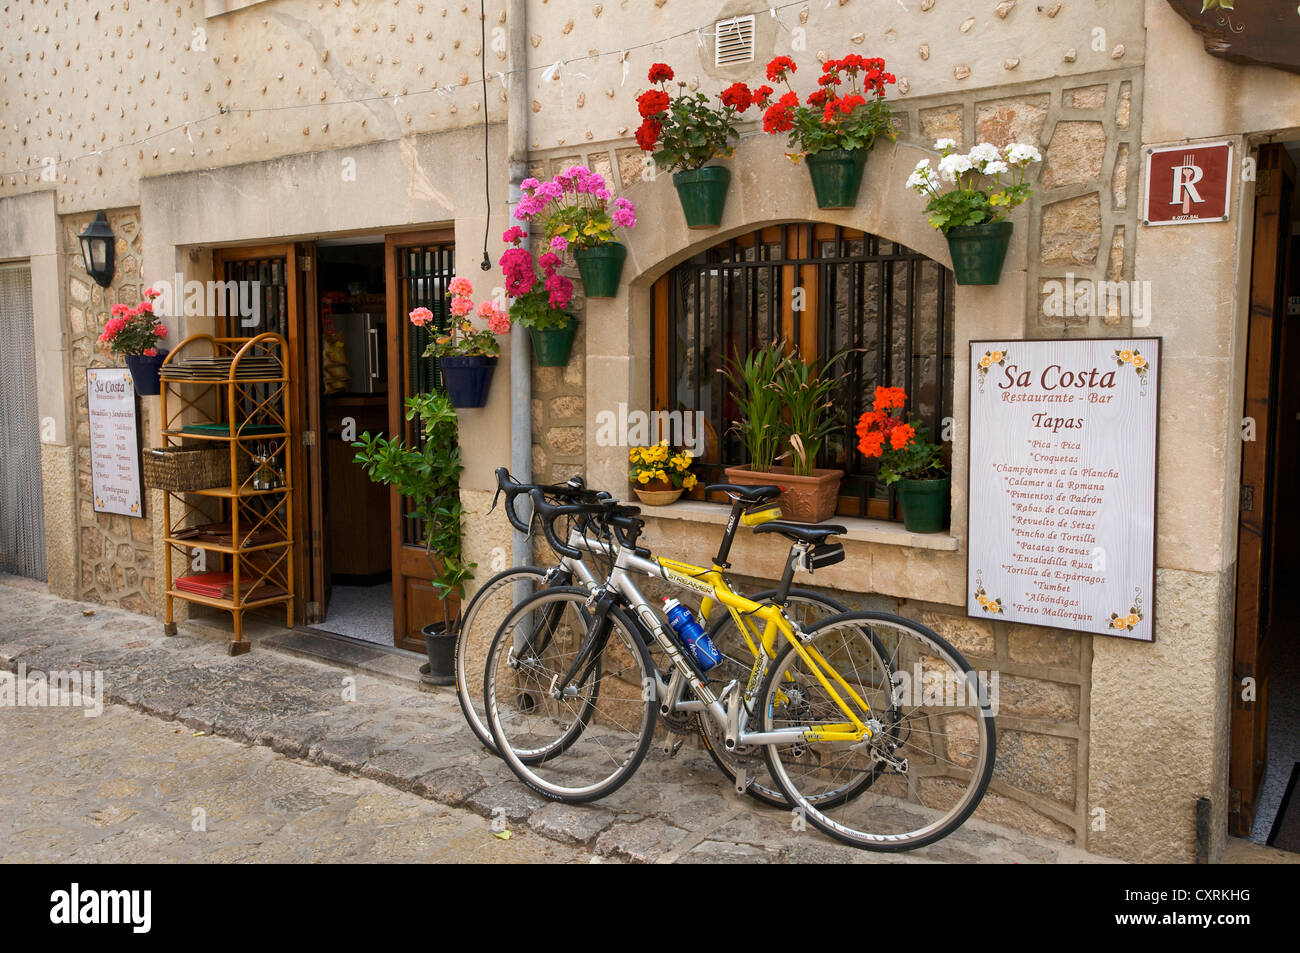 Bici da corsa parcheggiata fuori un ristorante, Valldemossa, Valldemosa, Mallorca, Maiorca, isole Baleari, Spagna, Europa Foto Stock